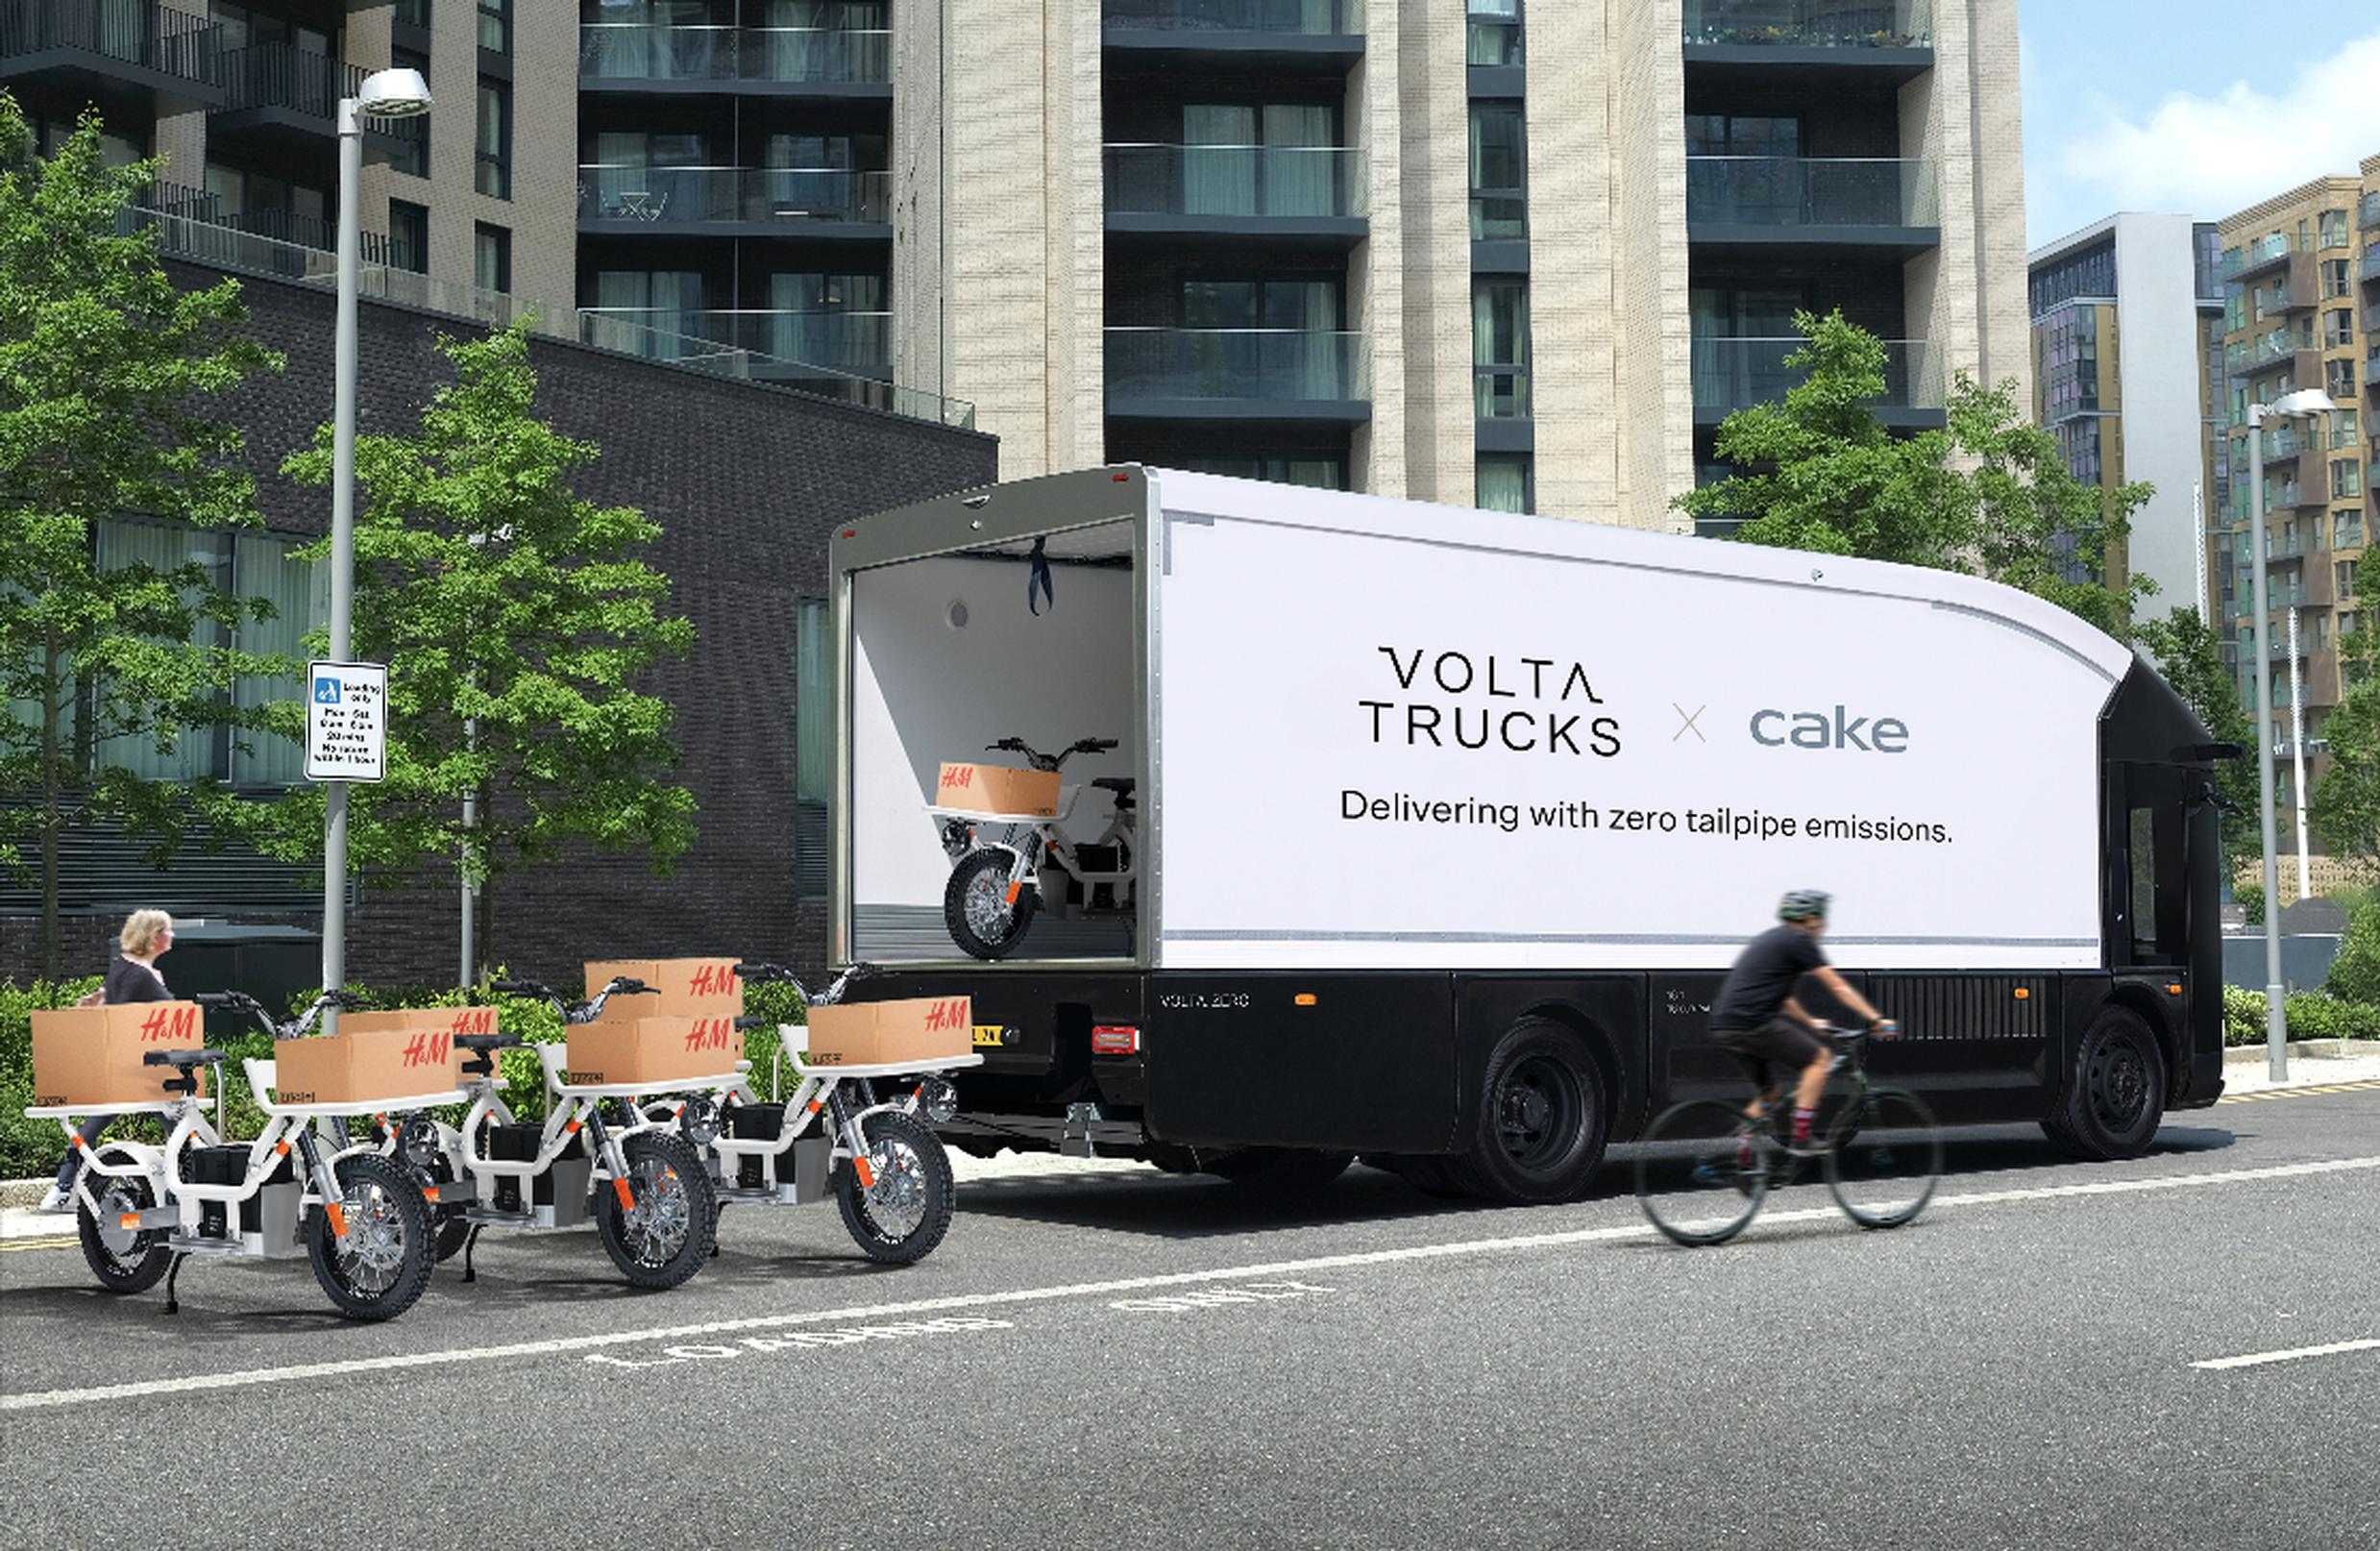 The Volta Trucks and Cake last-mile concept